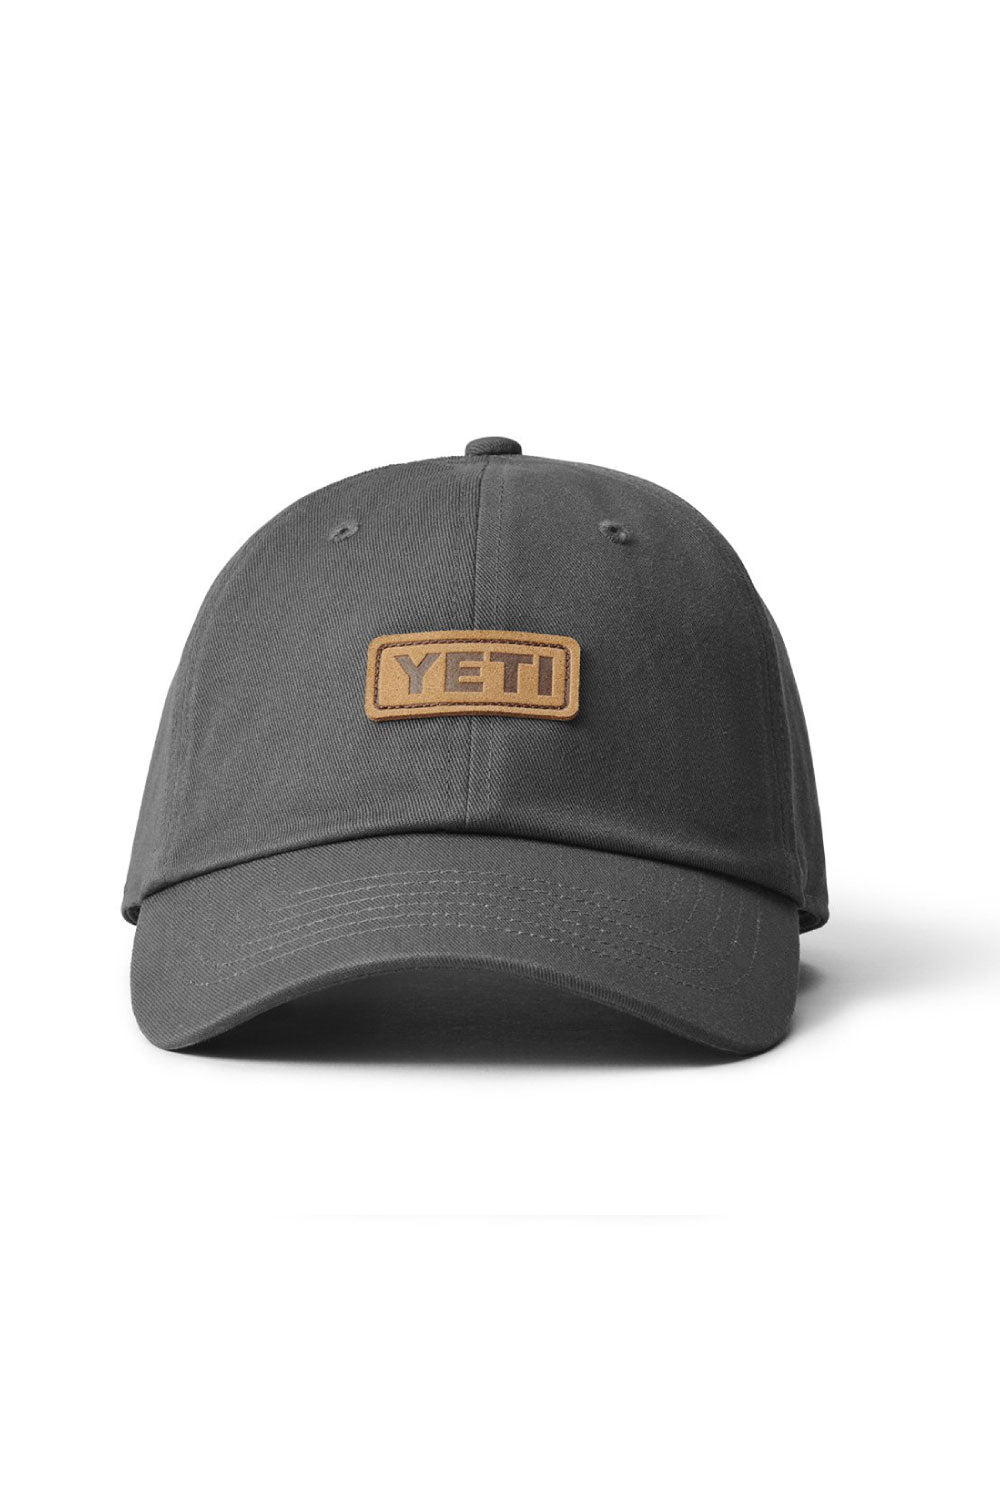 YETI Leather Logo Badge Hat